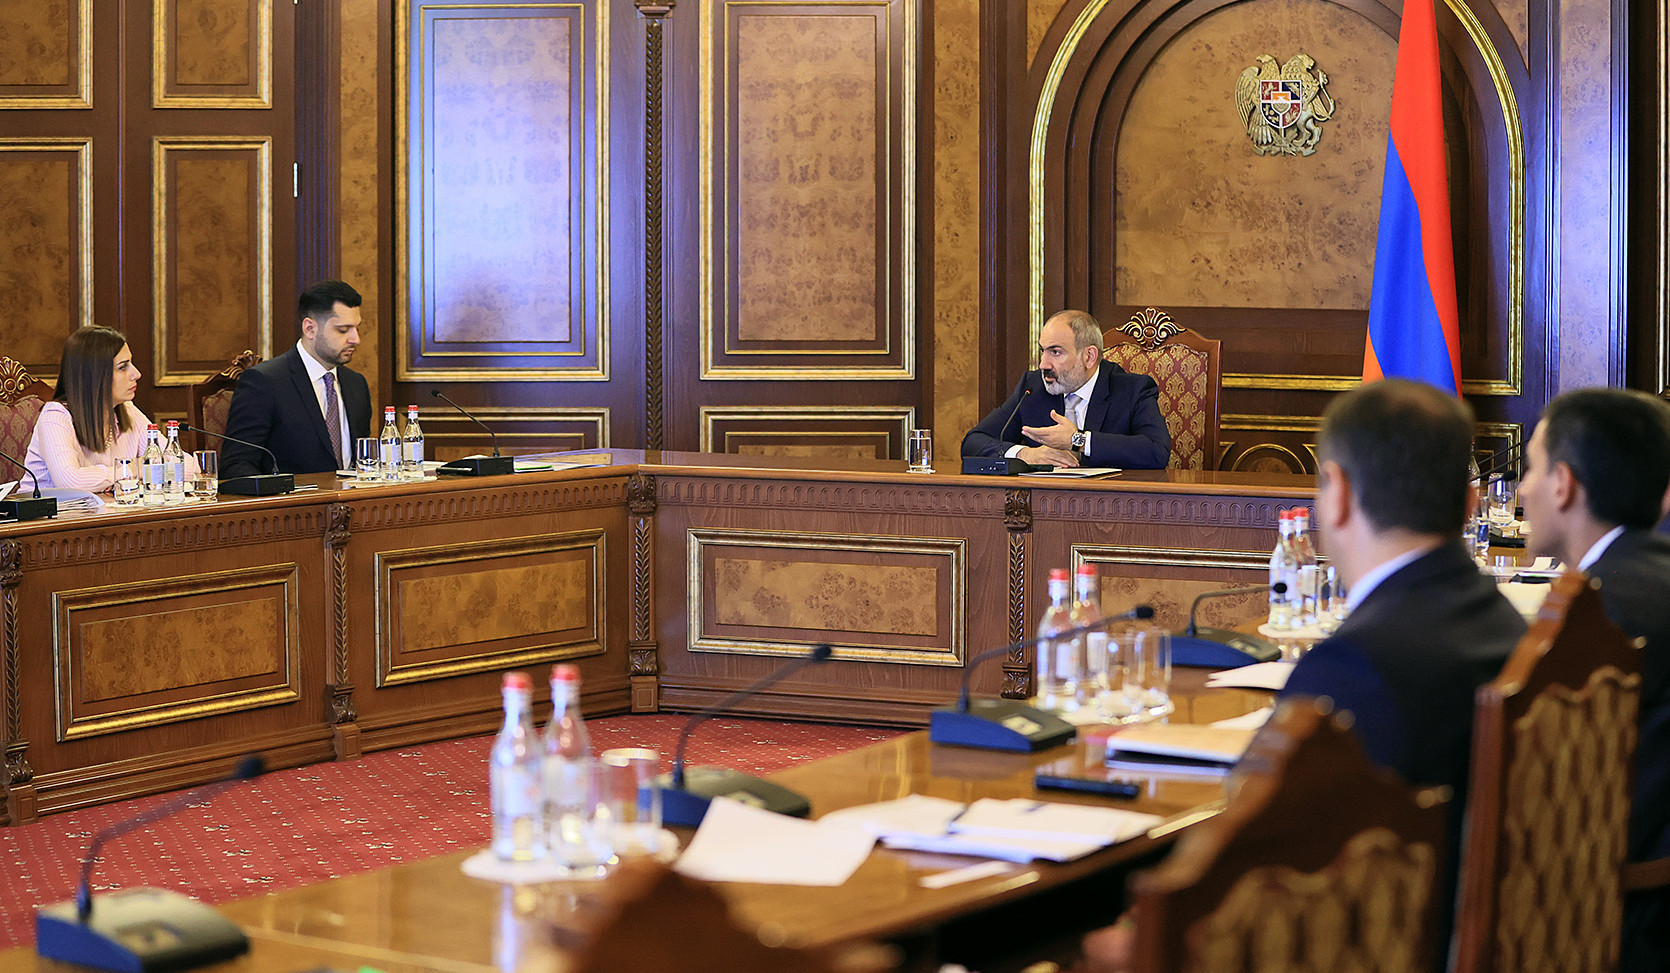 ՀՀ վարչապետին է ներկայացվել Գնումների համակարգի զարգացման հայեցակարգի նախագիծը